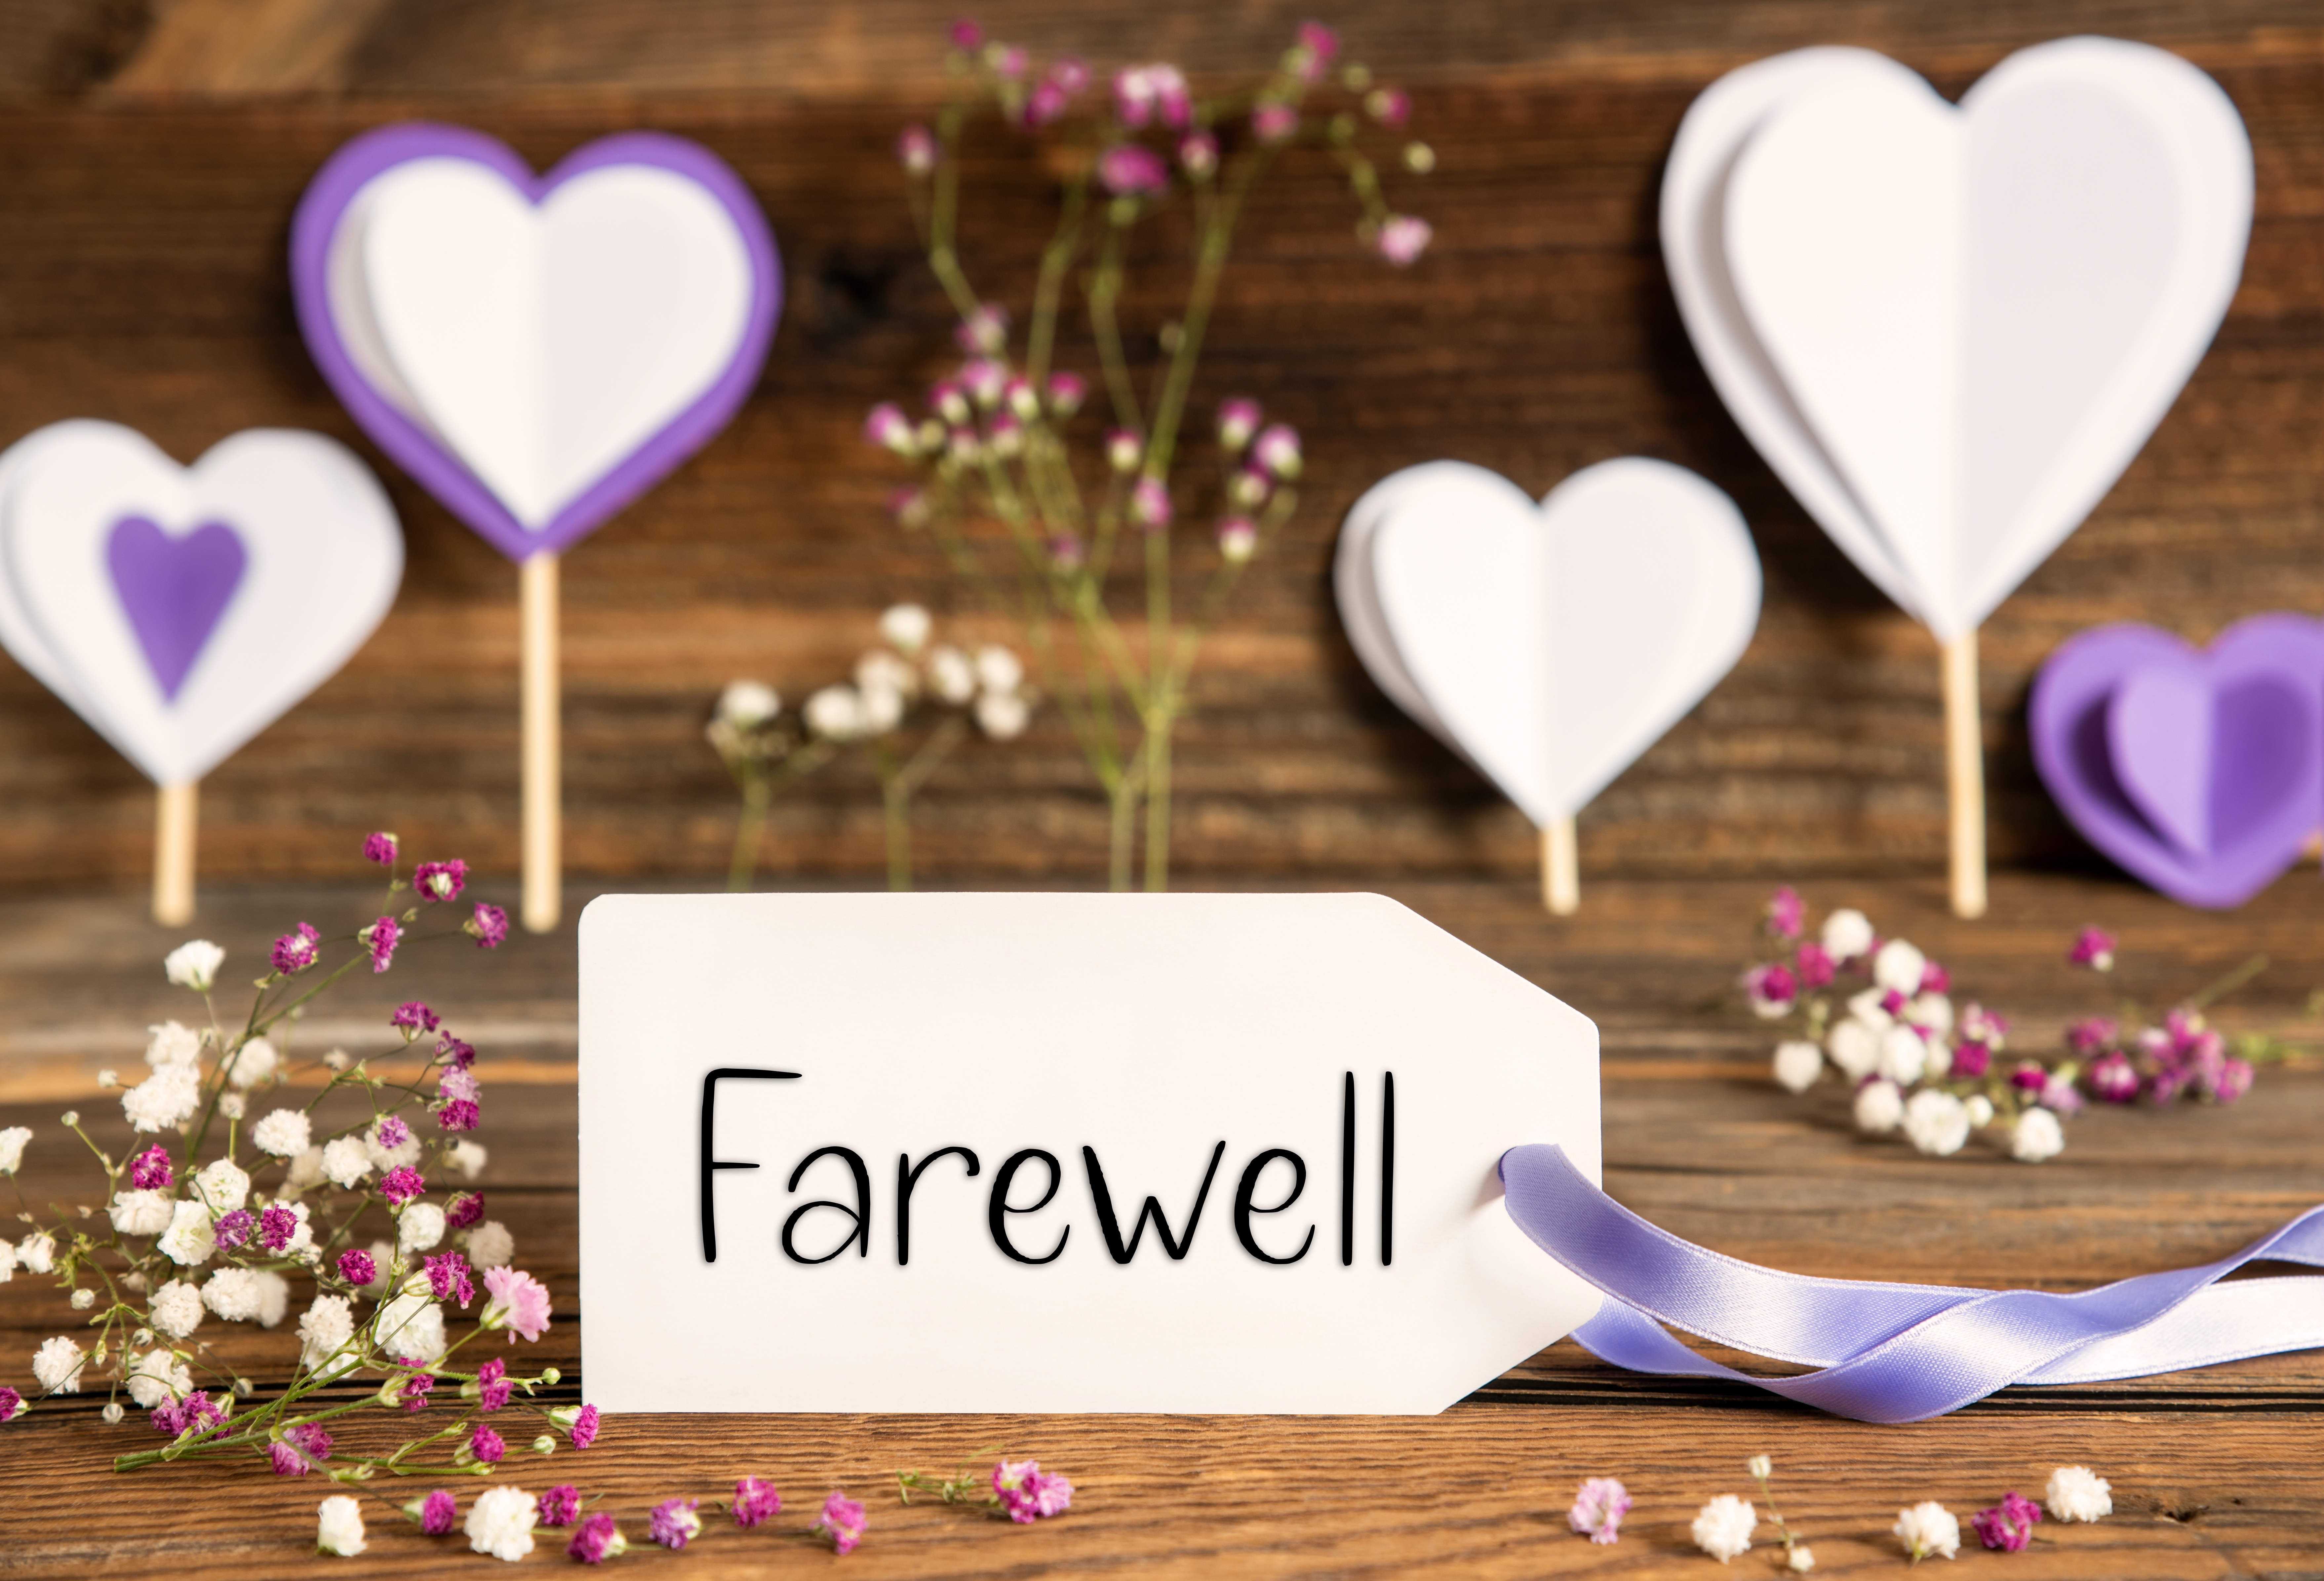 Eine Abschiedskarte, umgeben von lila Dekorationen | Quelle: Shutterstock